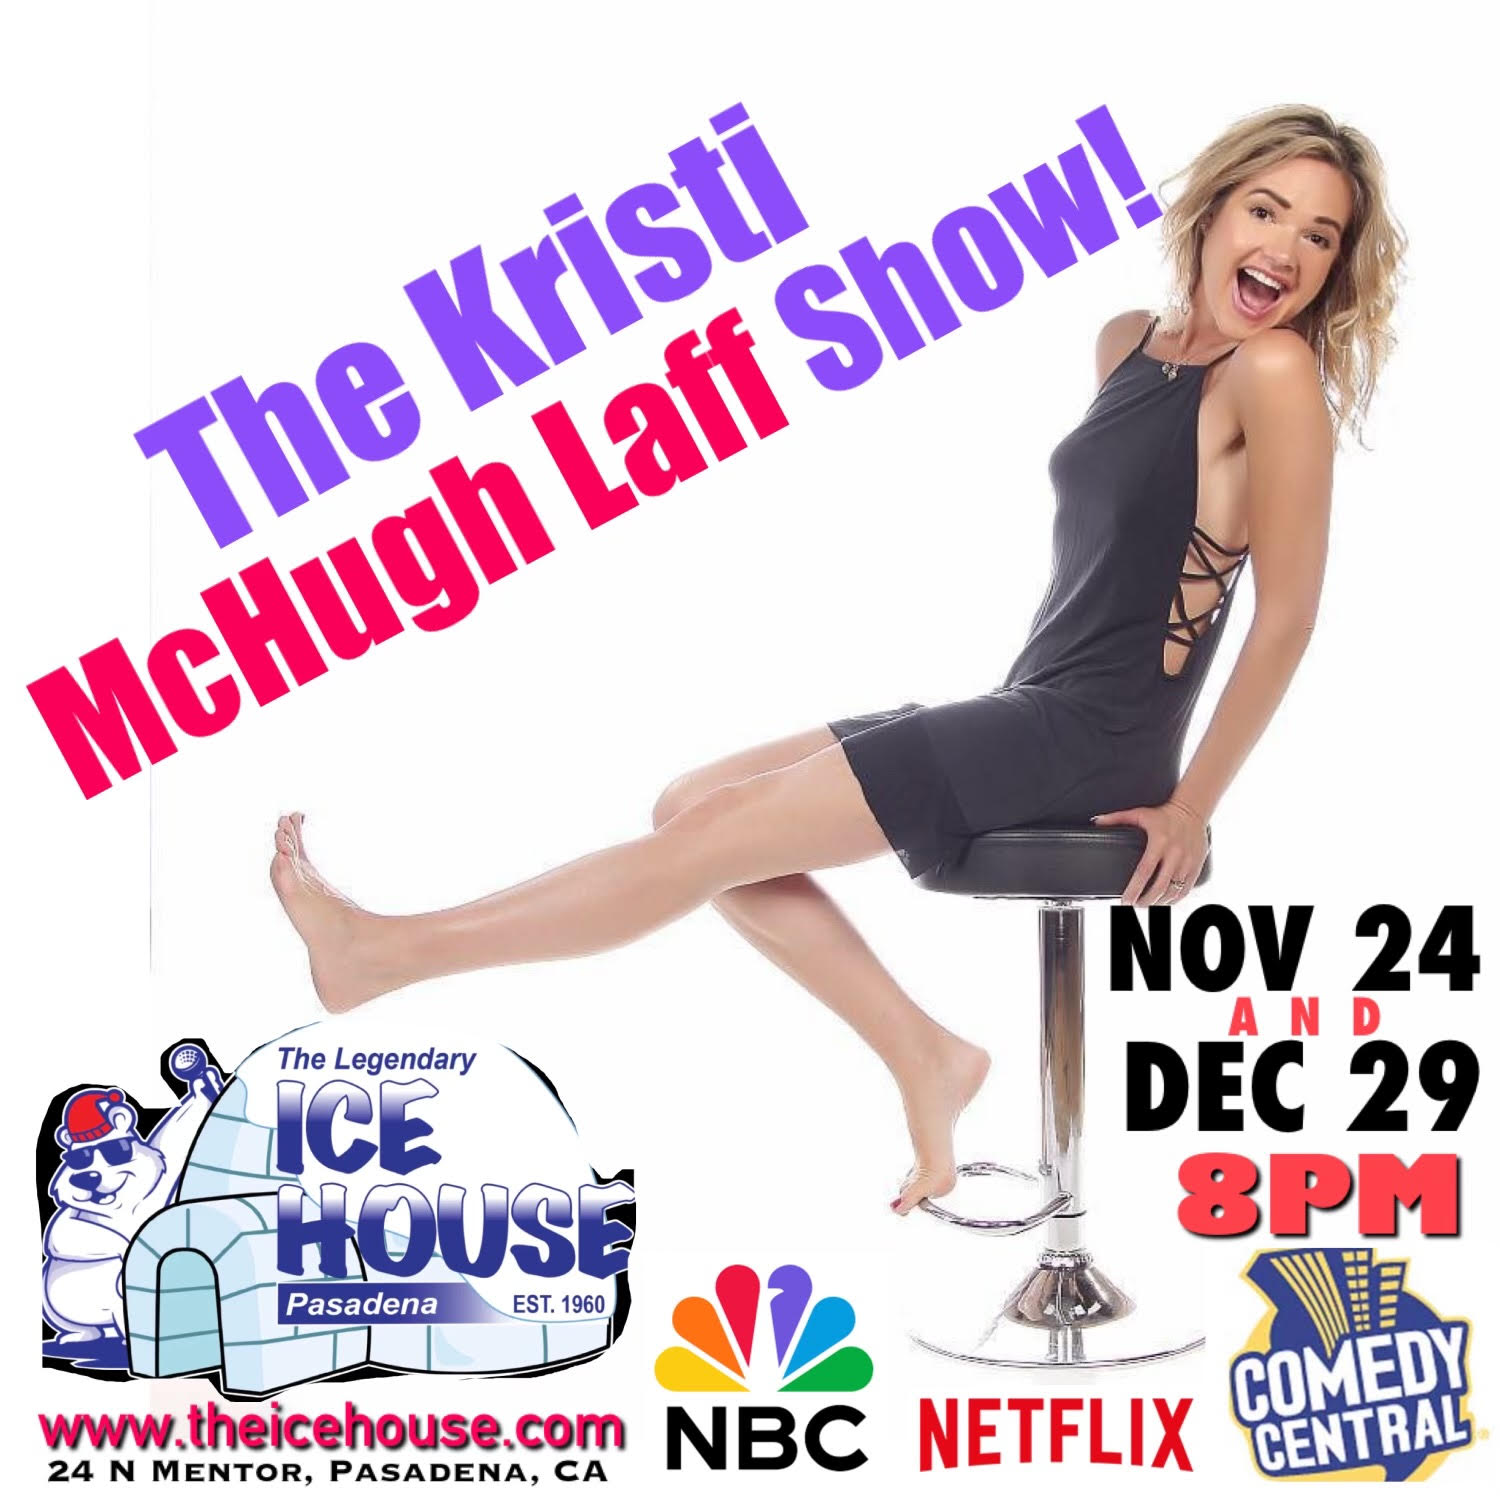 Kristi McHugh Laff Show